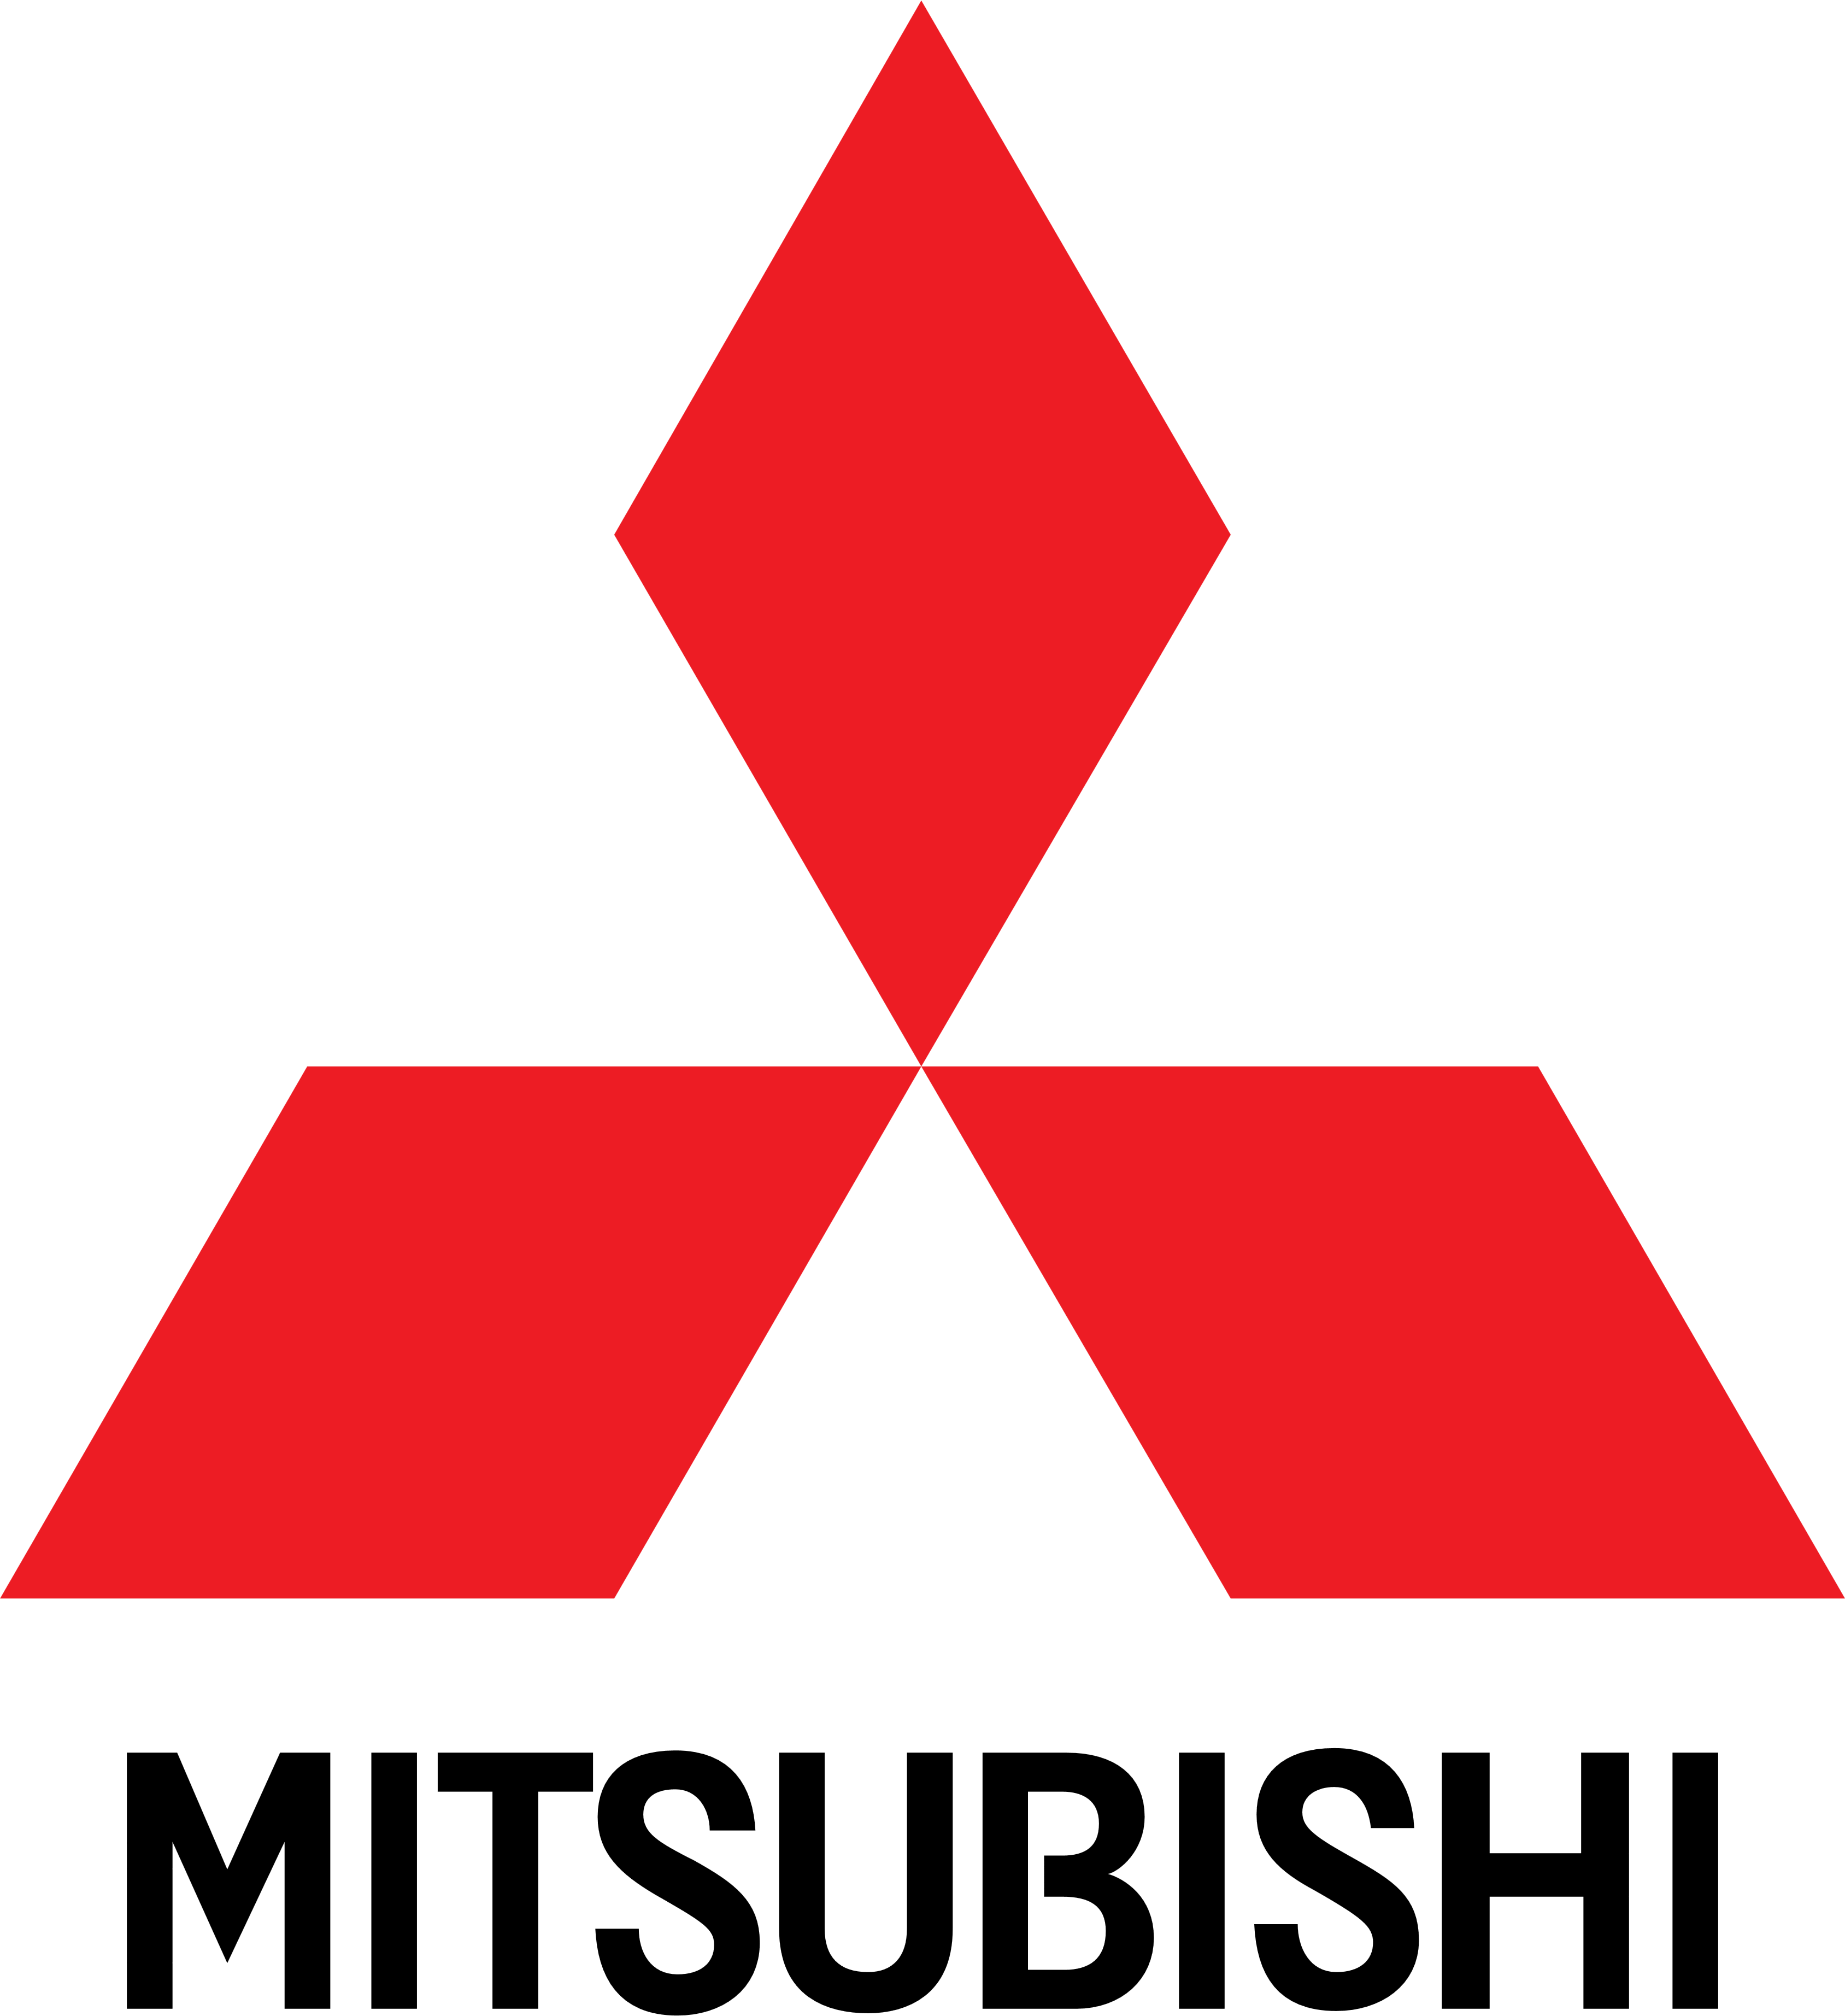 Mitsubishi Logo 640x480